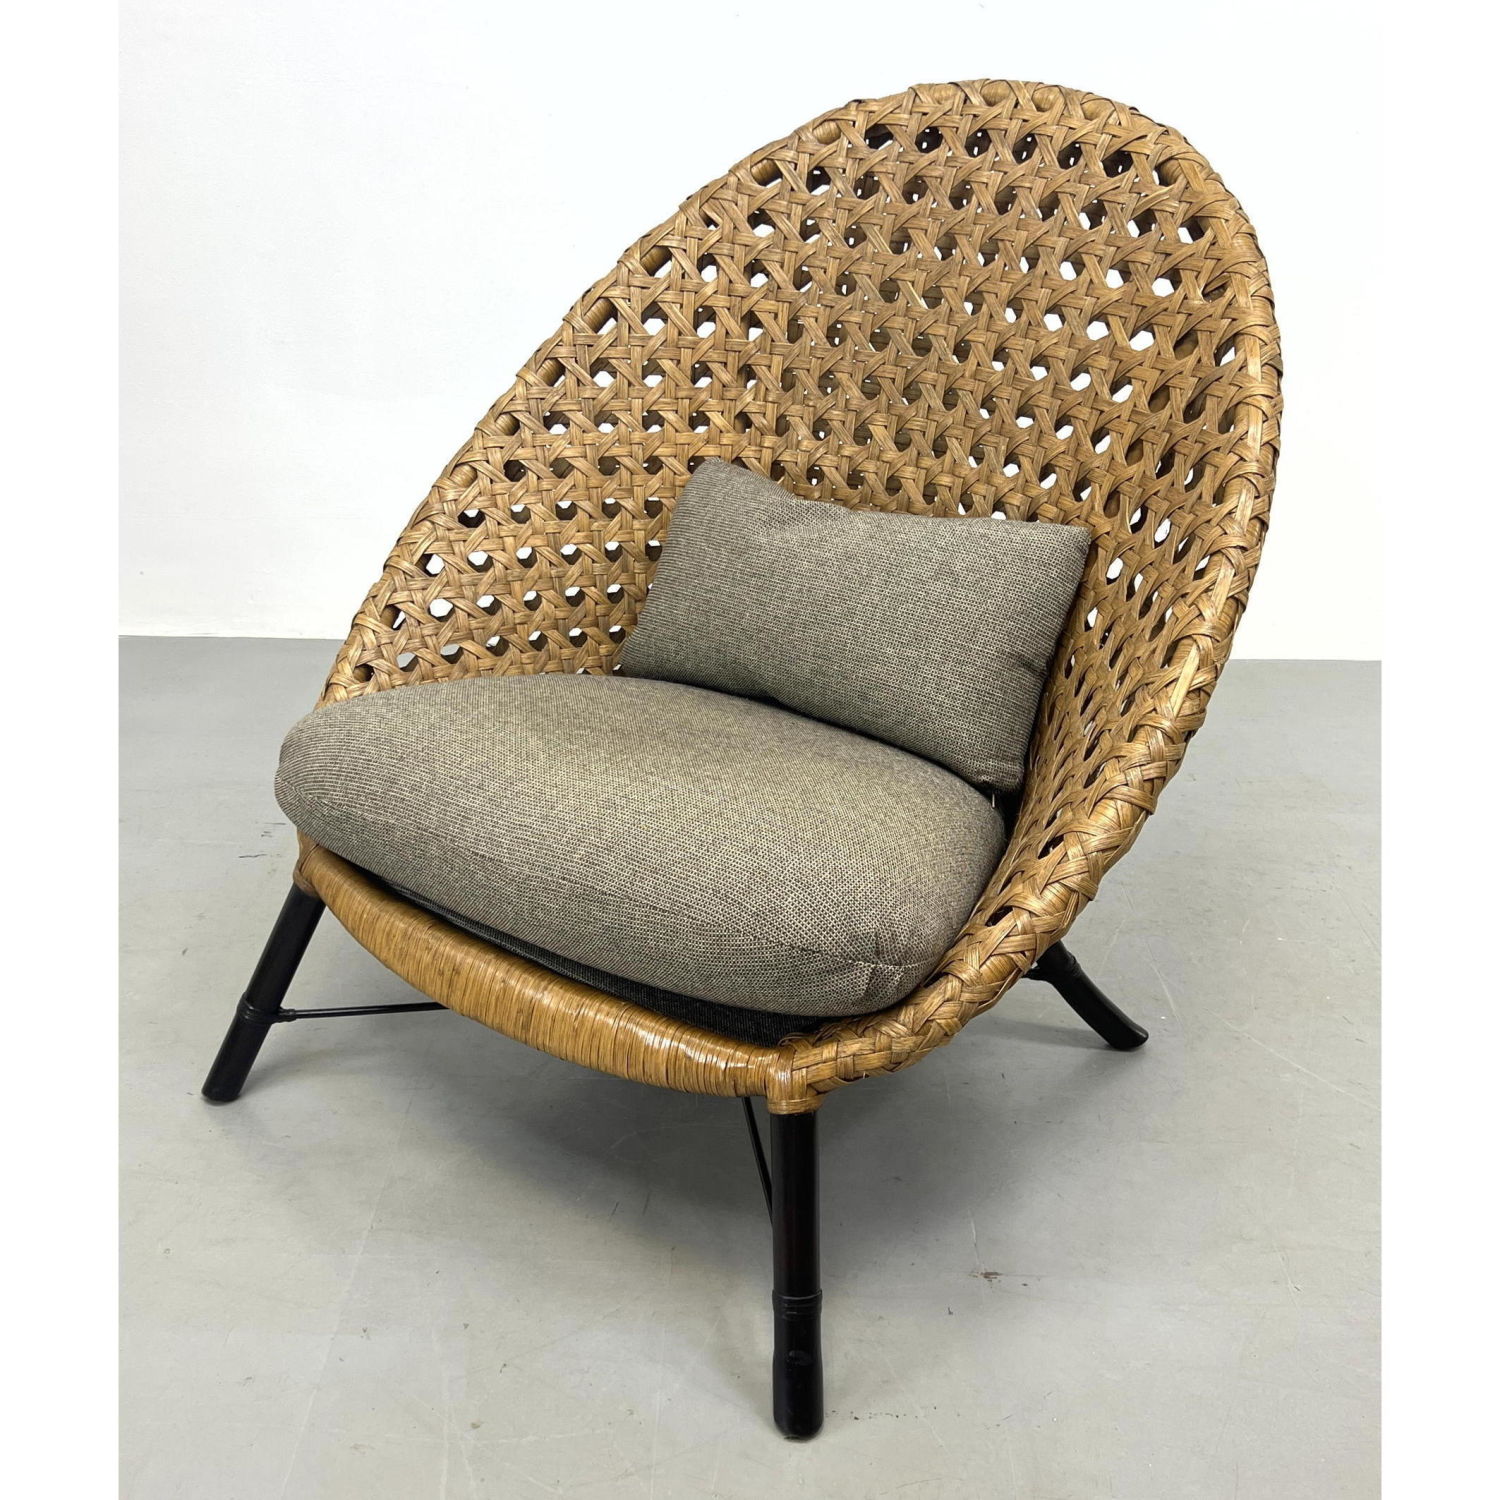 Bernhardt Woven Rattan Lounge Chair.